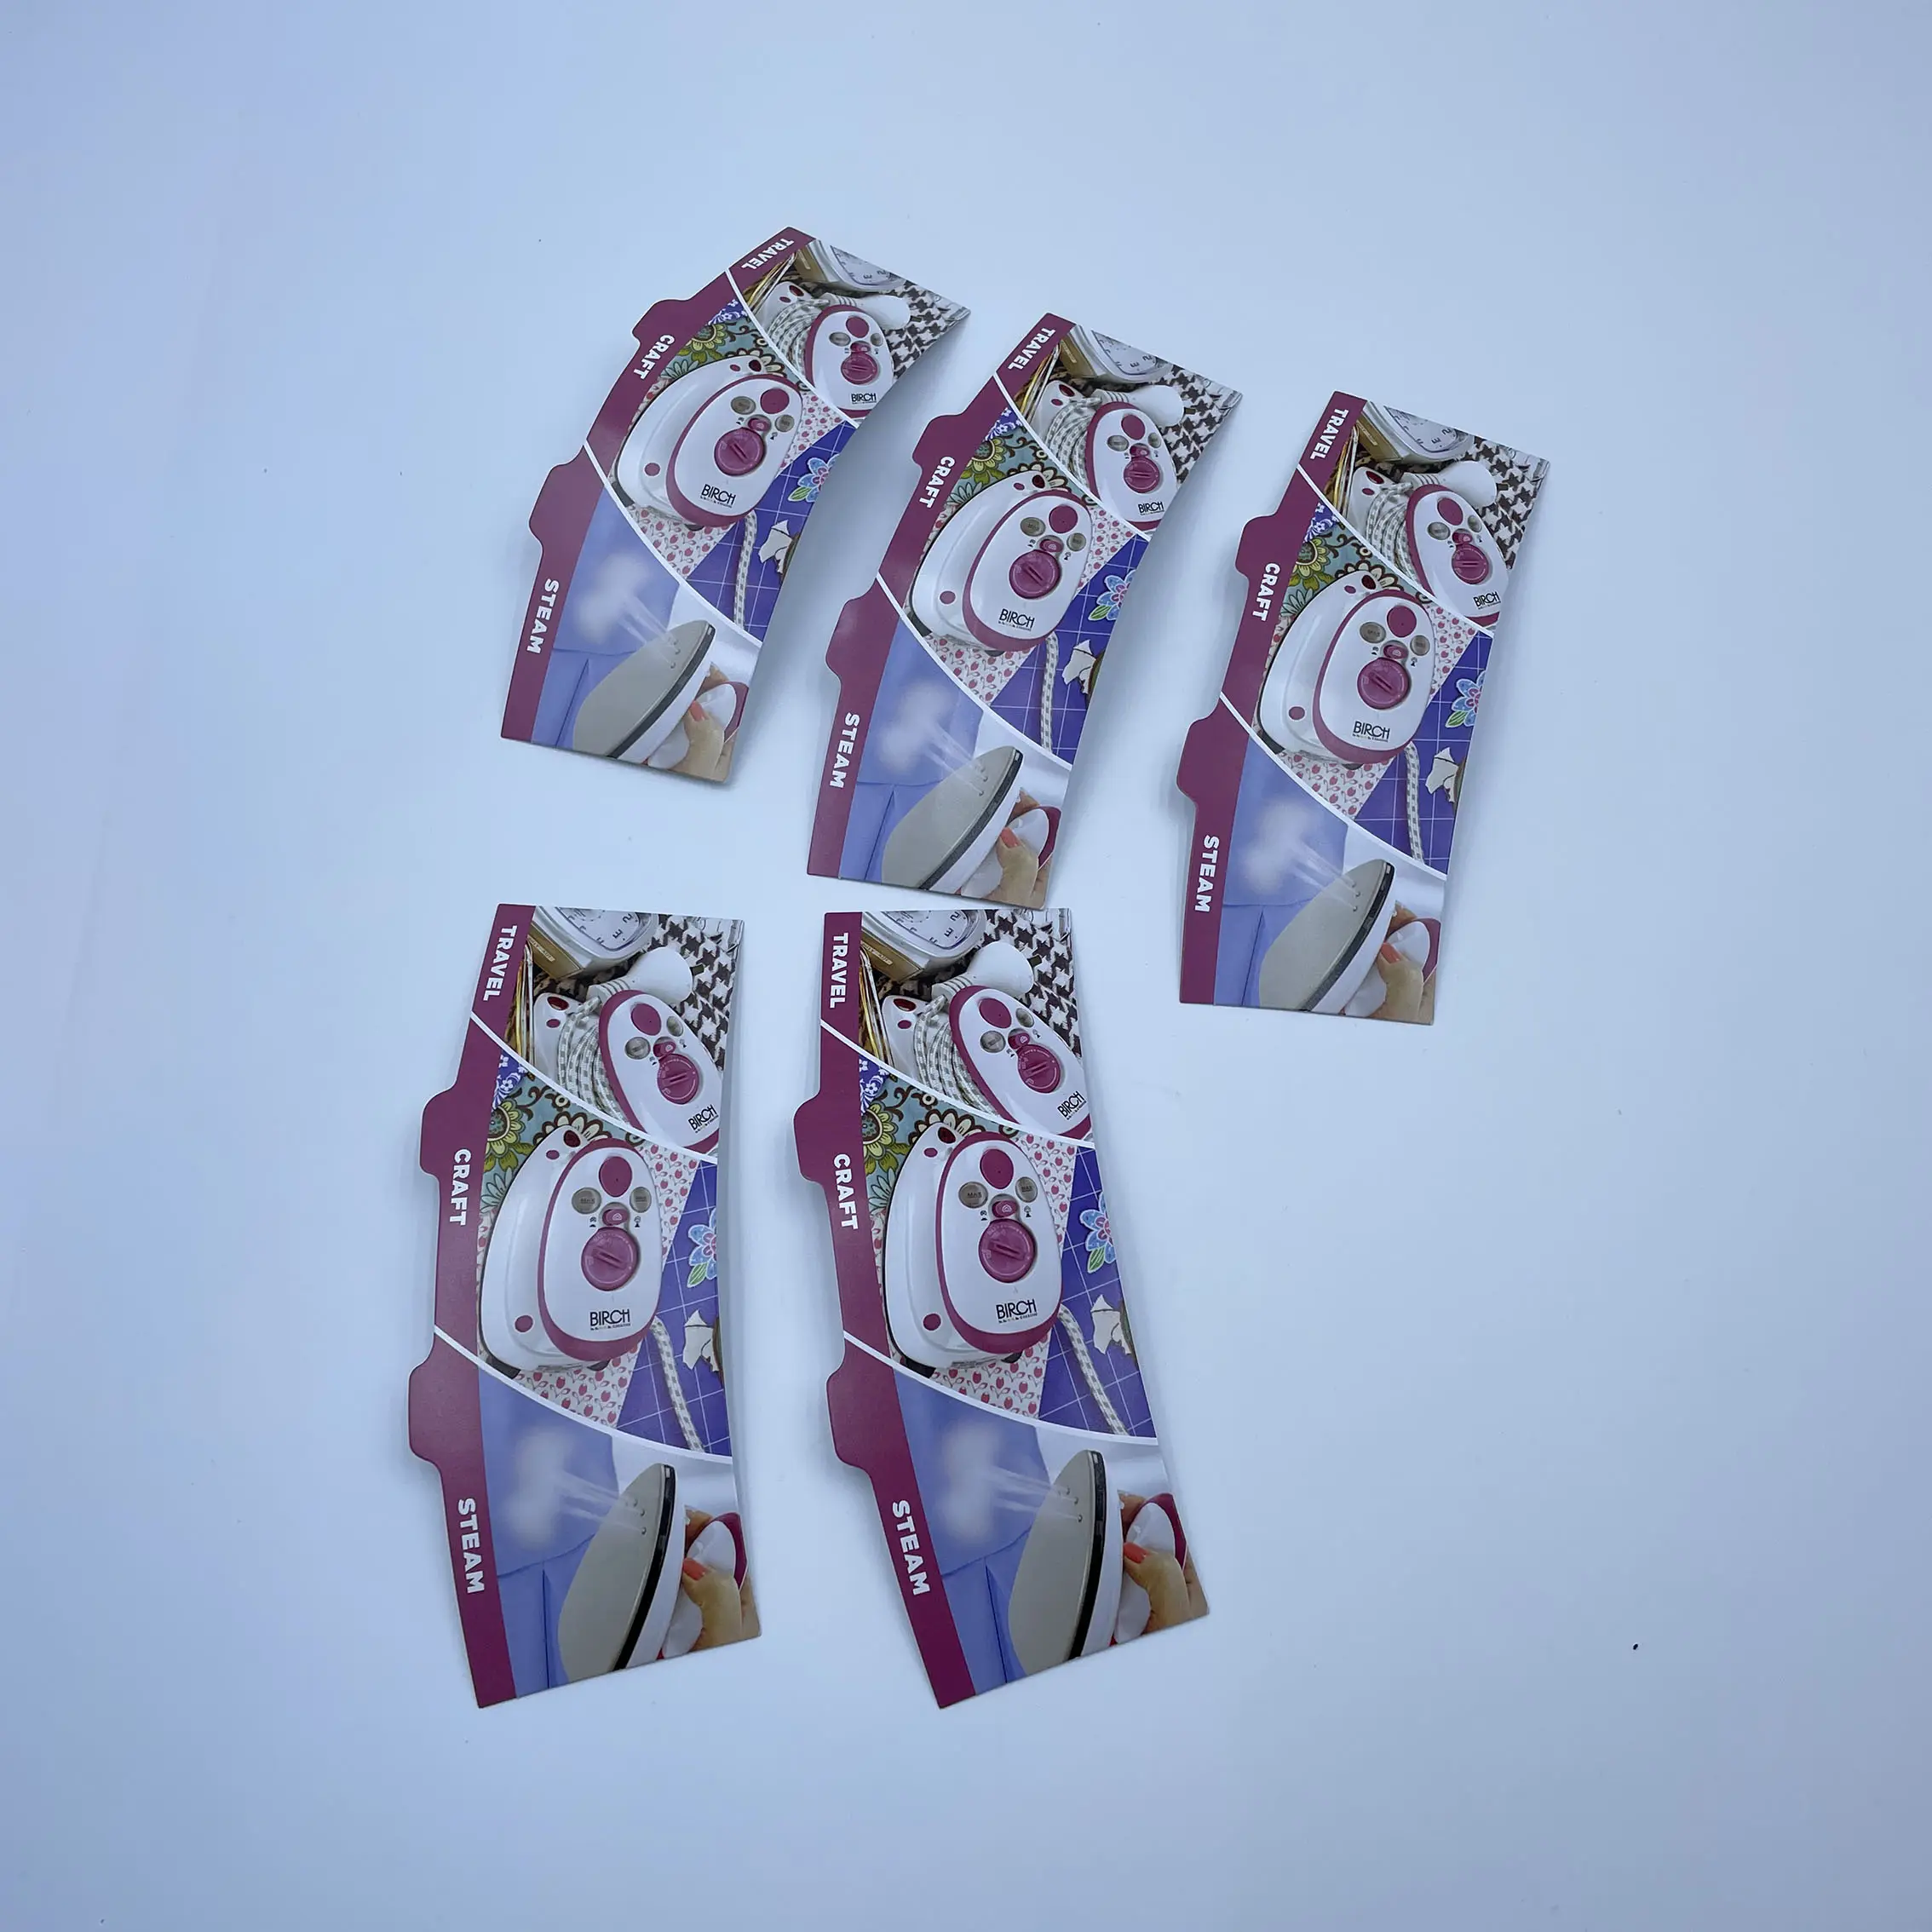 コート紙カード環境にやさしい素材カスタムOEMチラシリーフレットカタログパンフレット中国卸売印刷